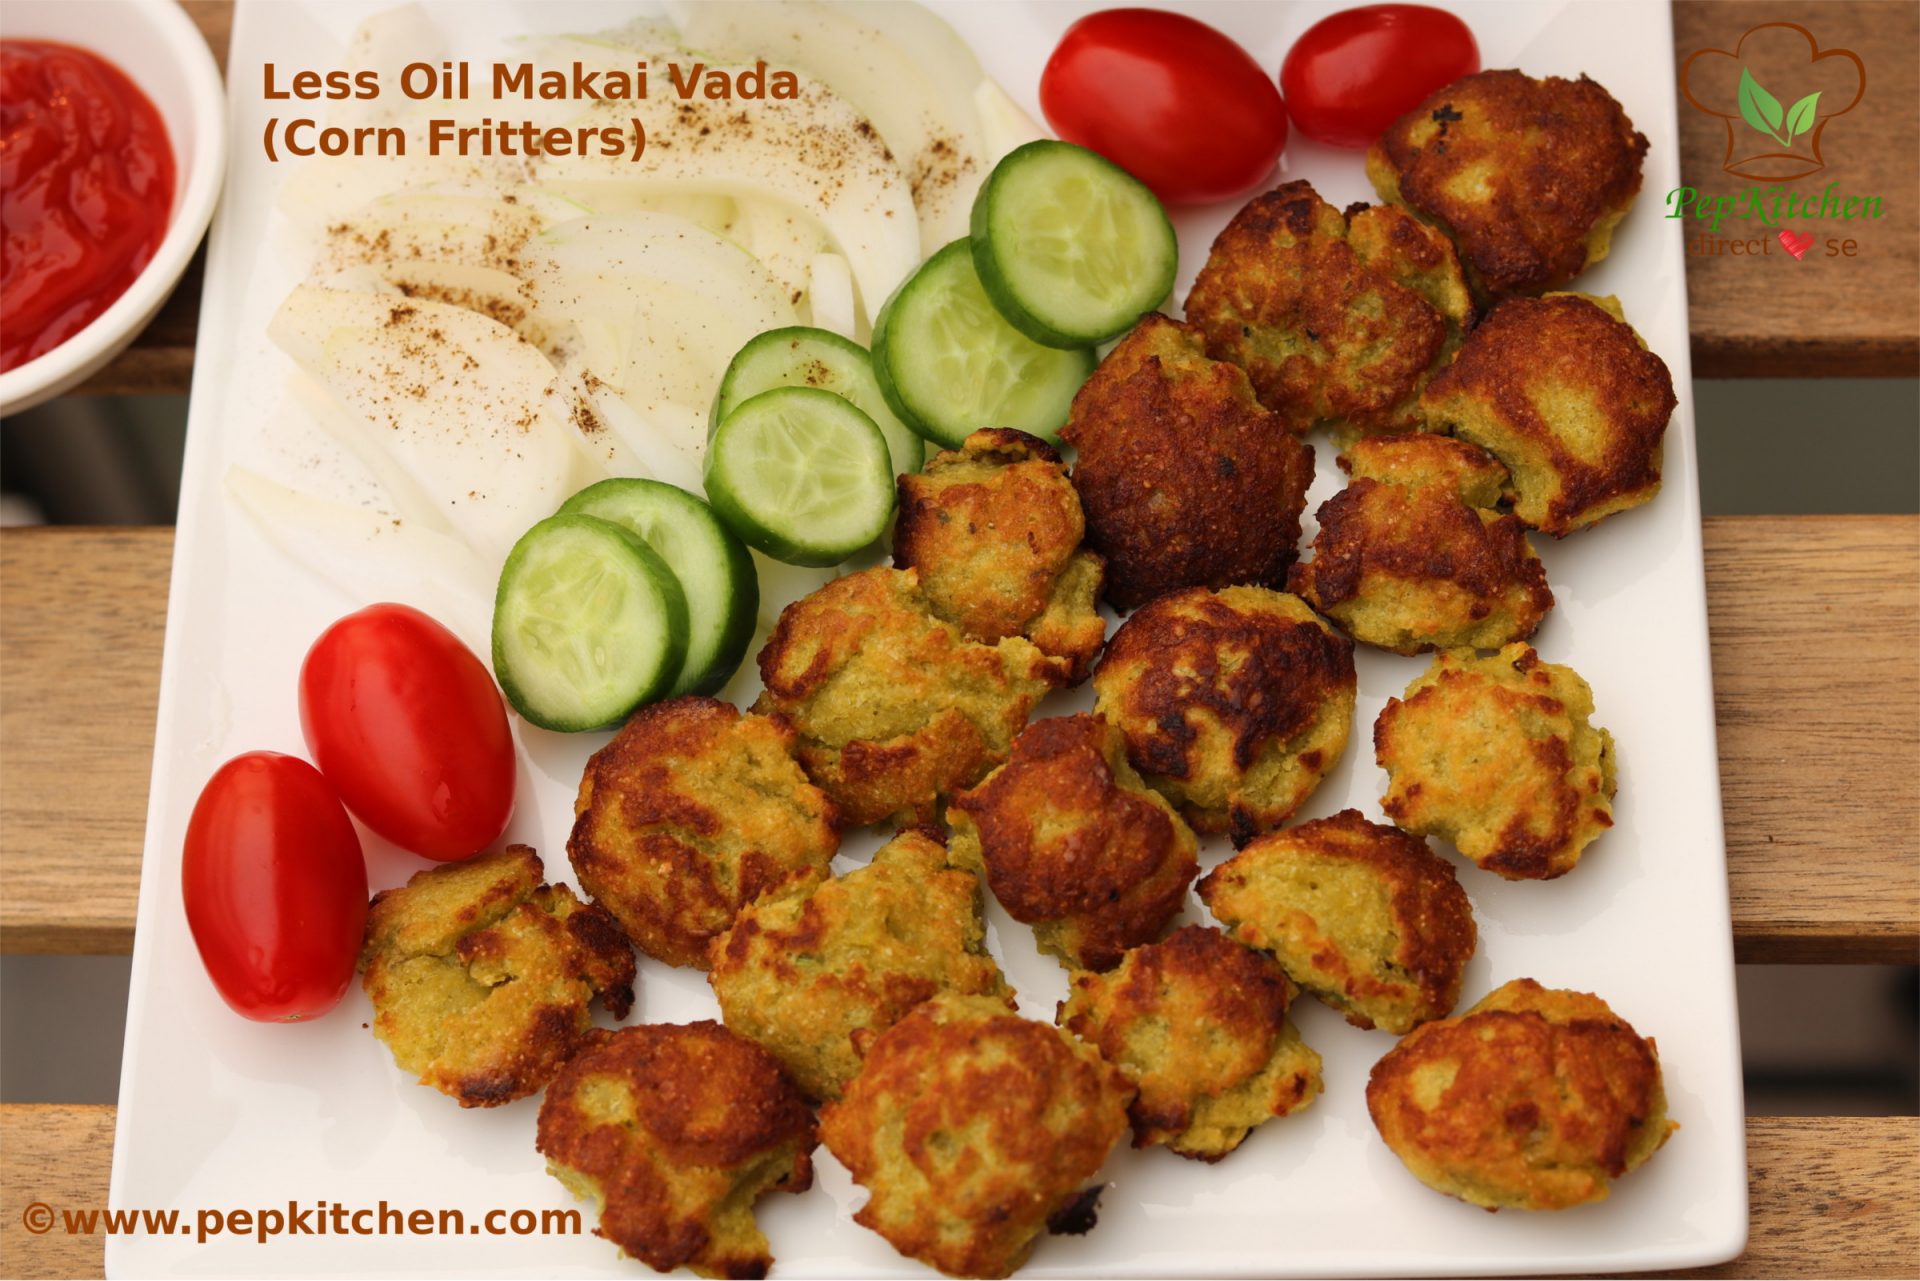 Less Oil Makai Vada (Corn Fritters)